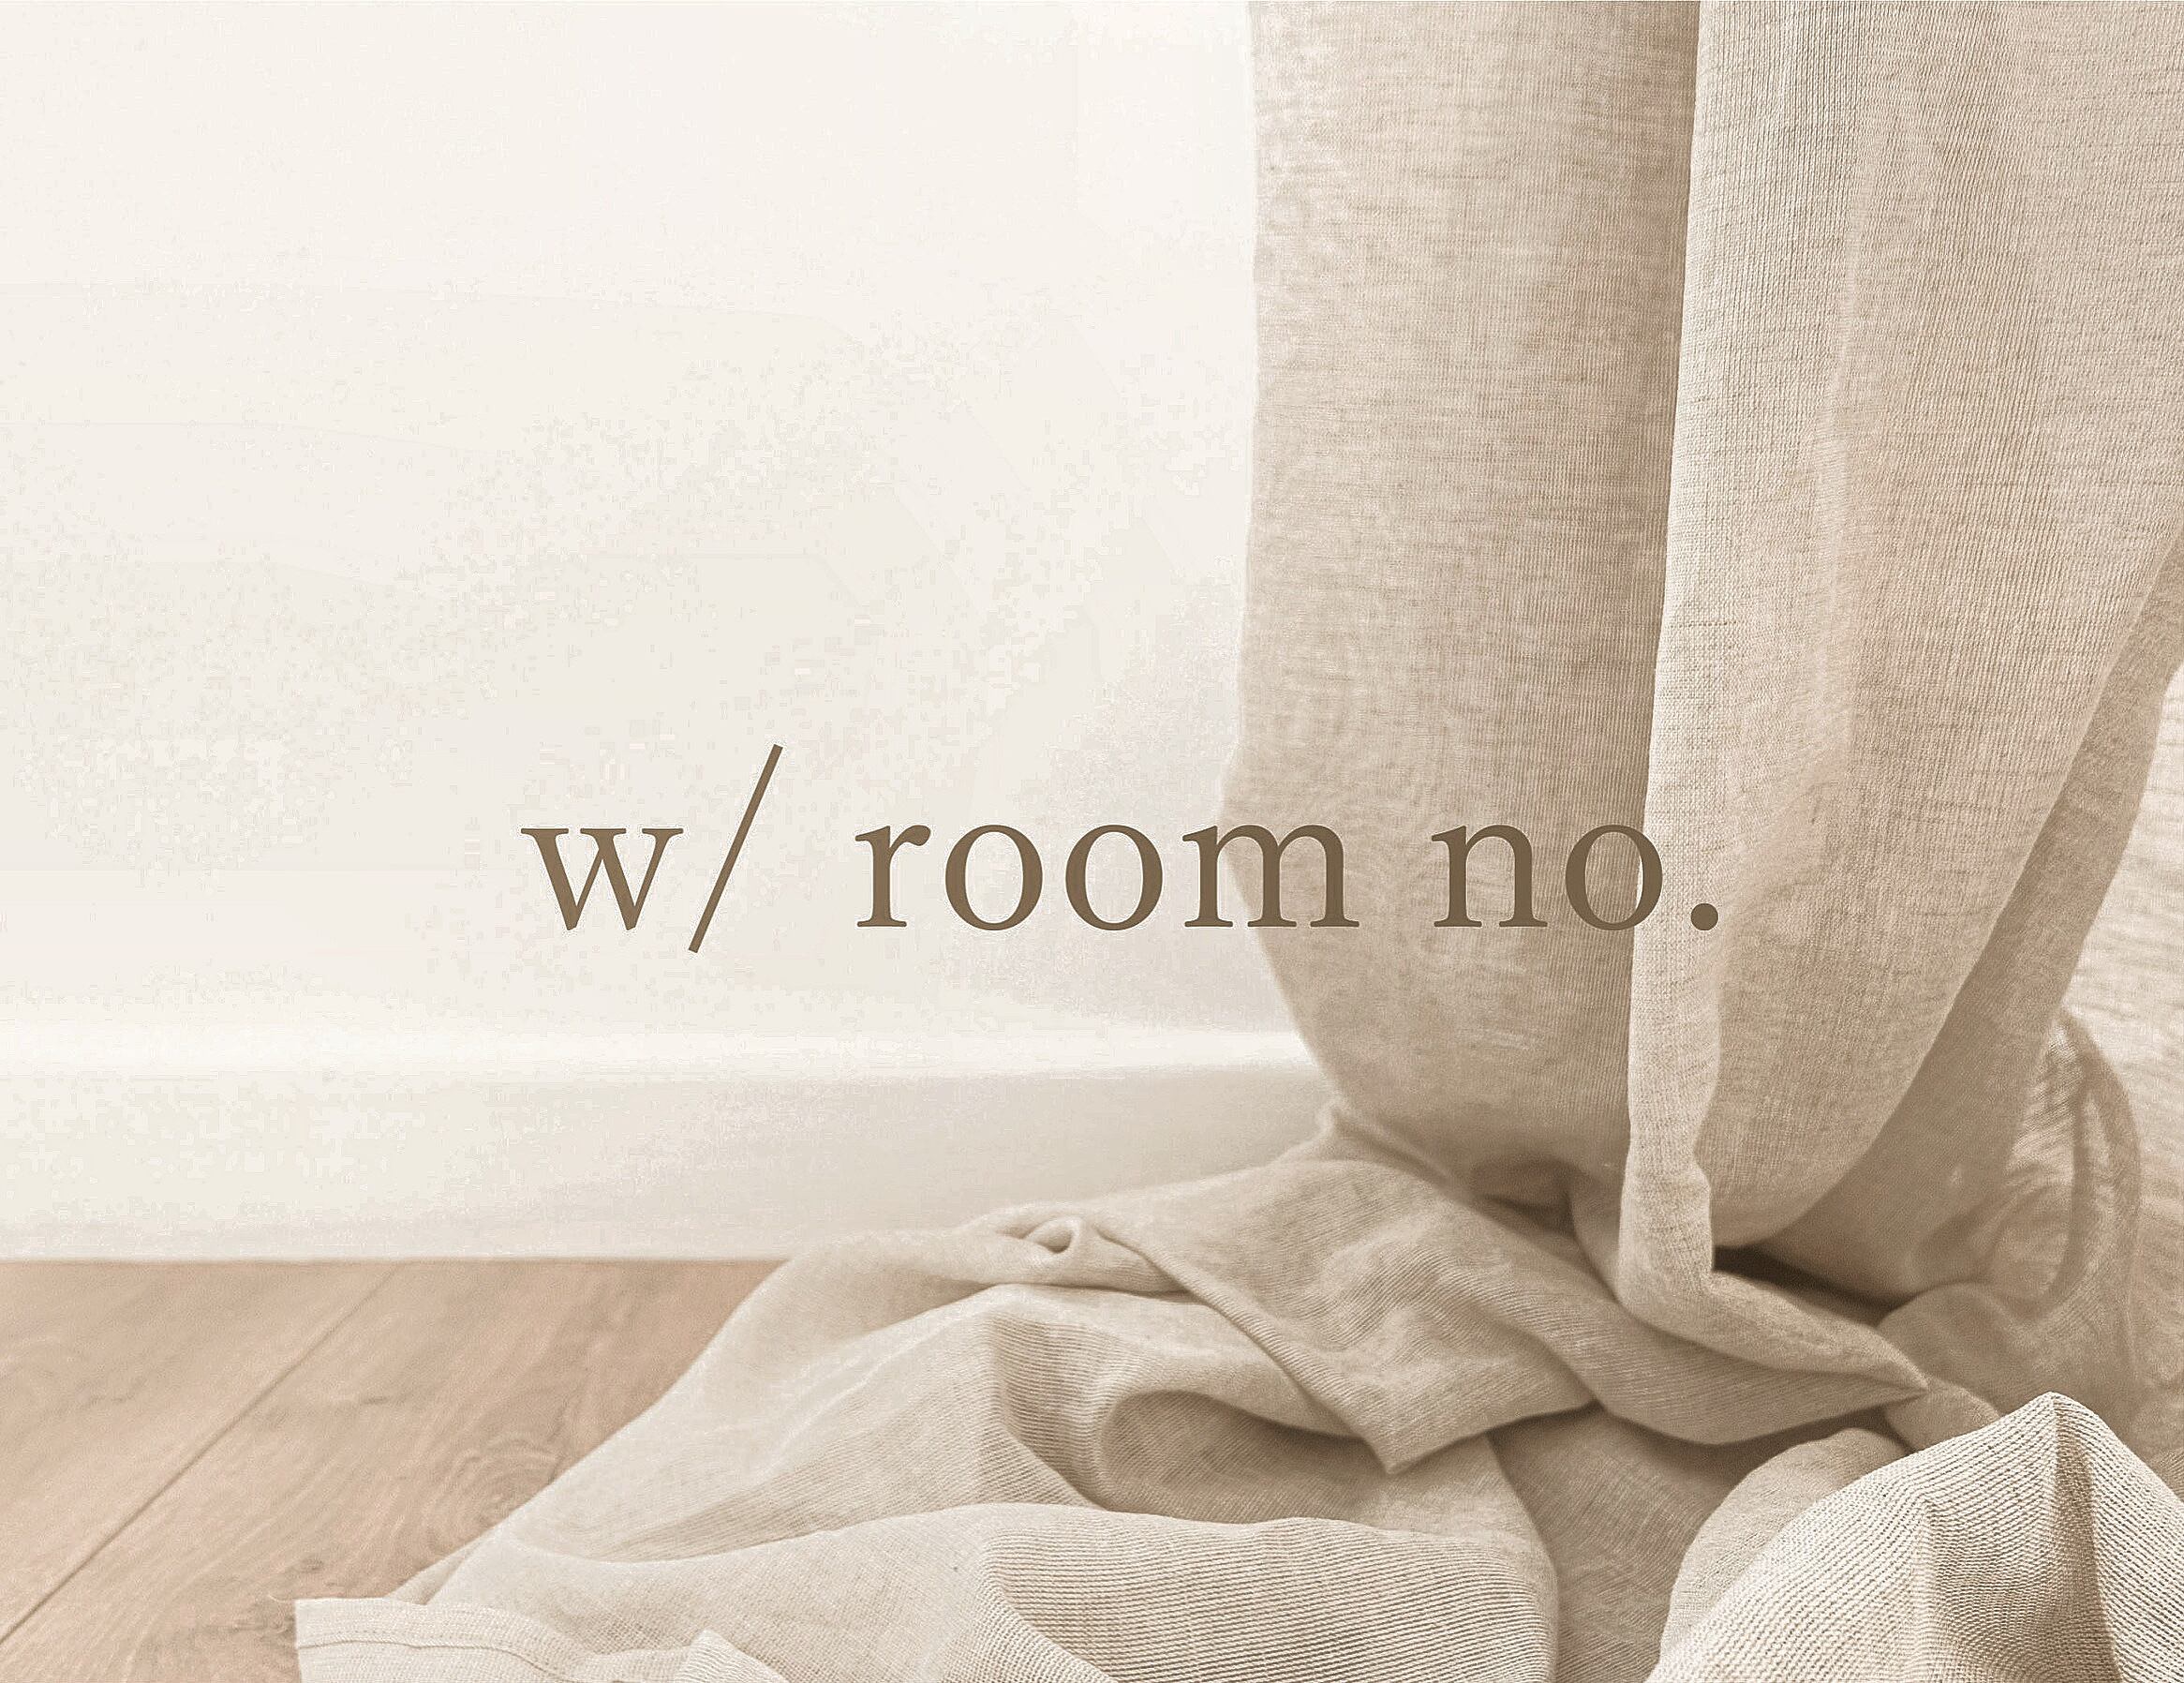 w/ room no.